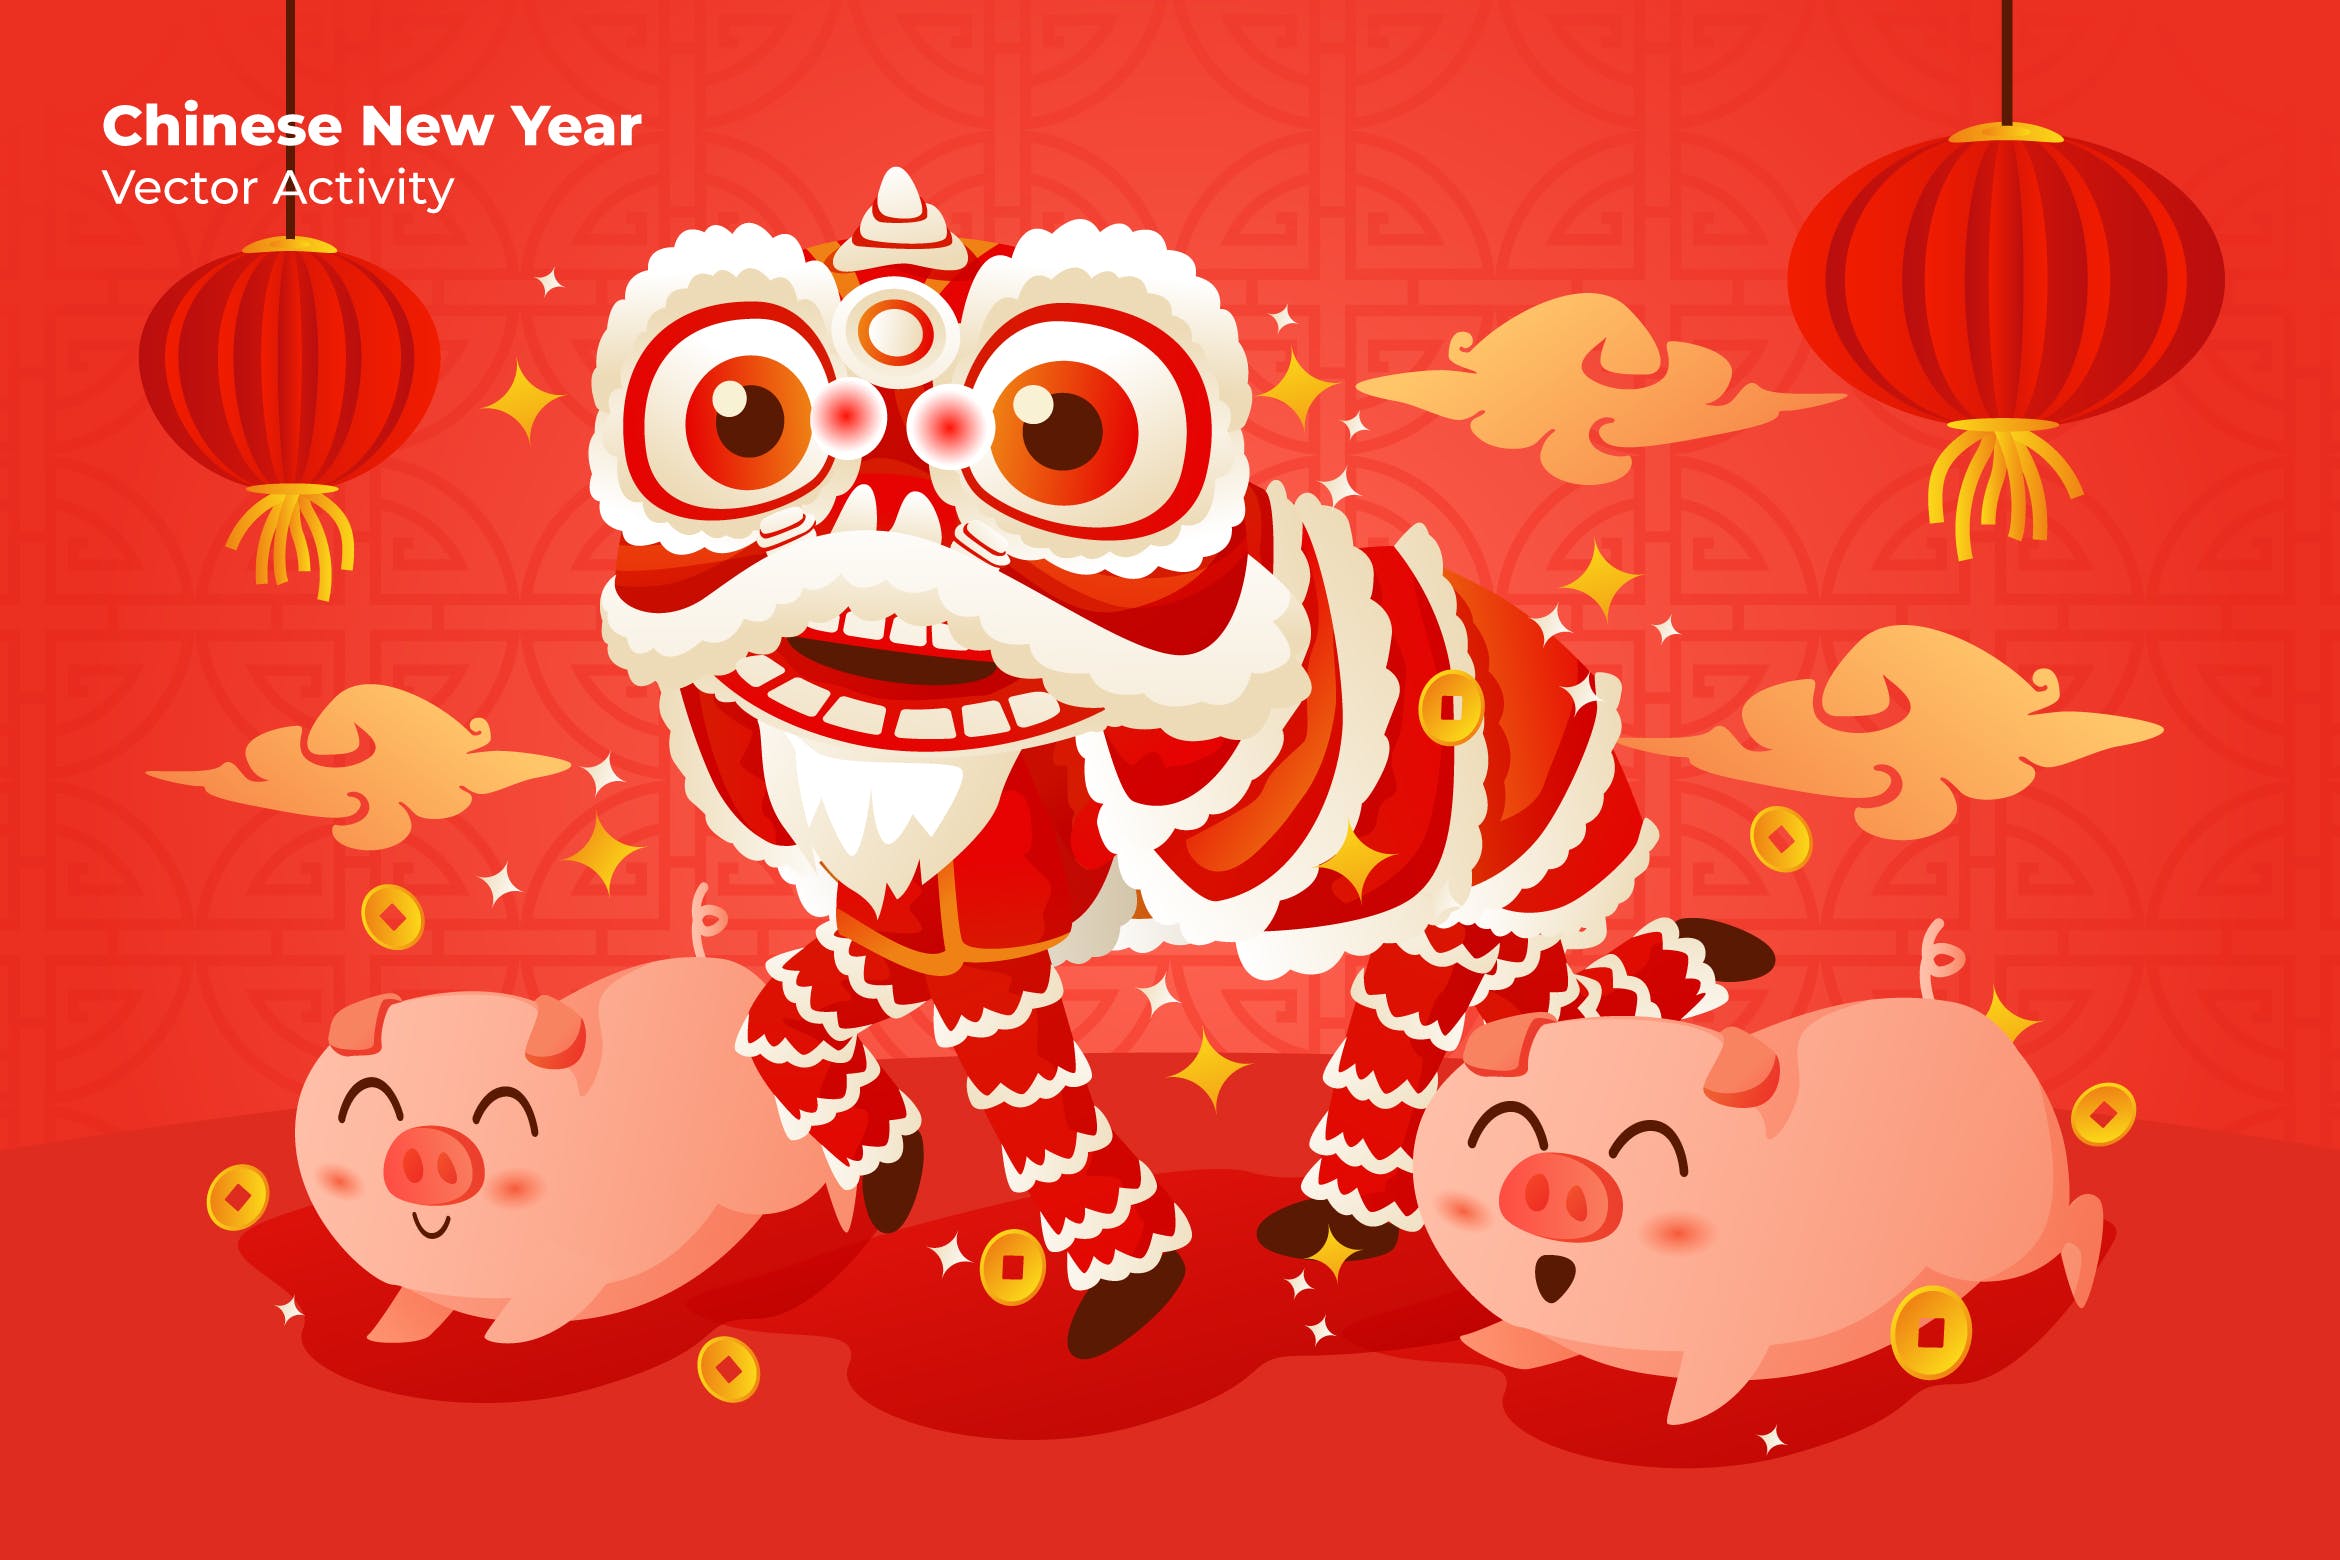 中国新年猪年快乐矢量插画素材 Chinese New Year – Vector Illustration插图